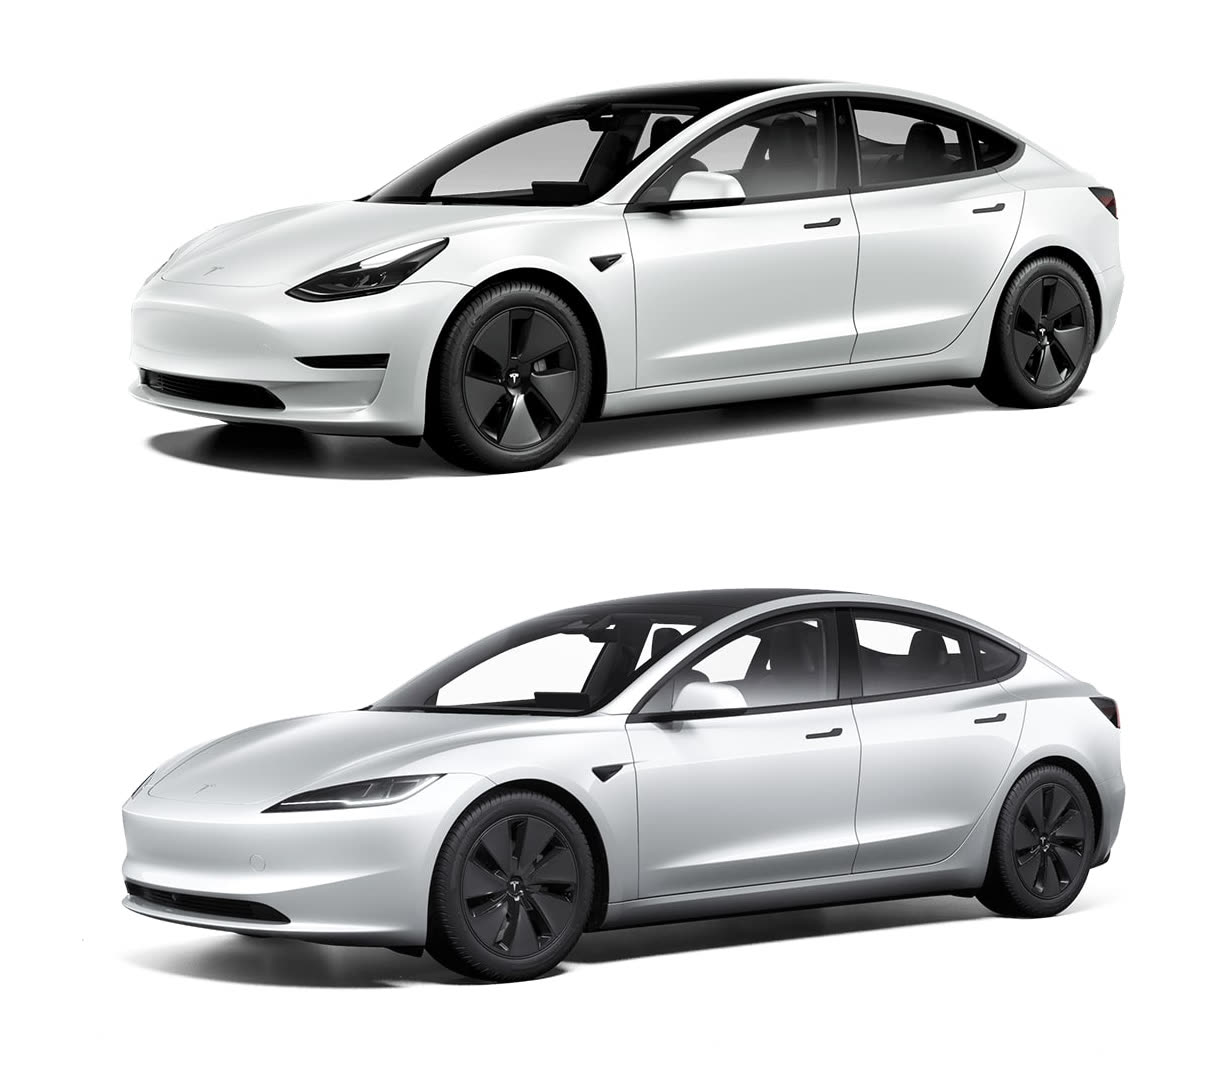 Les 7 défauts que Tesla doit absolument corriger sur la Model 3